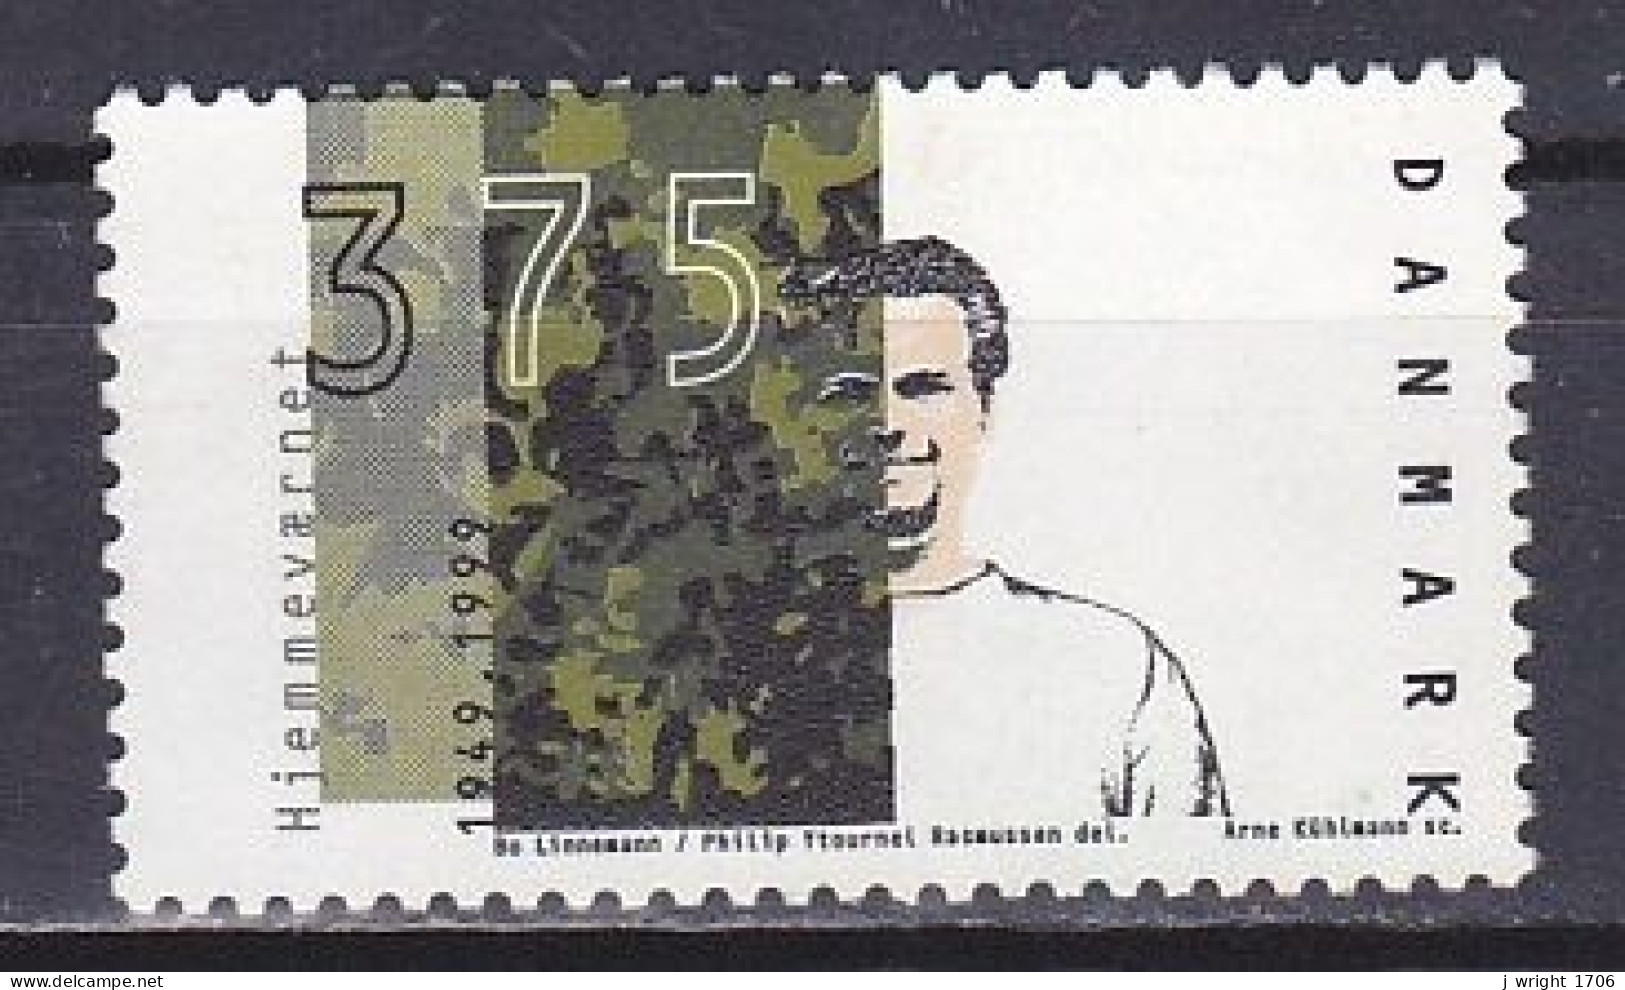 Denmark, 1999, Home Guard 50th Anniv, 3.75kr, USED - Gebruikt